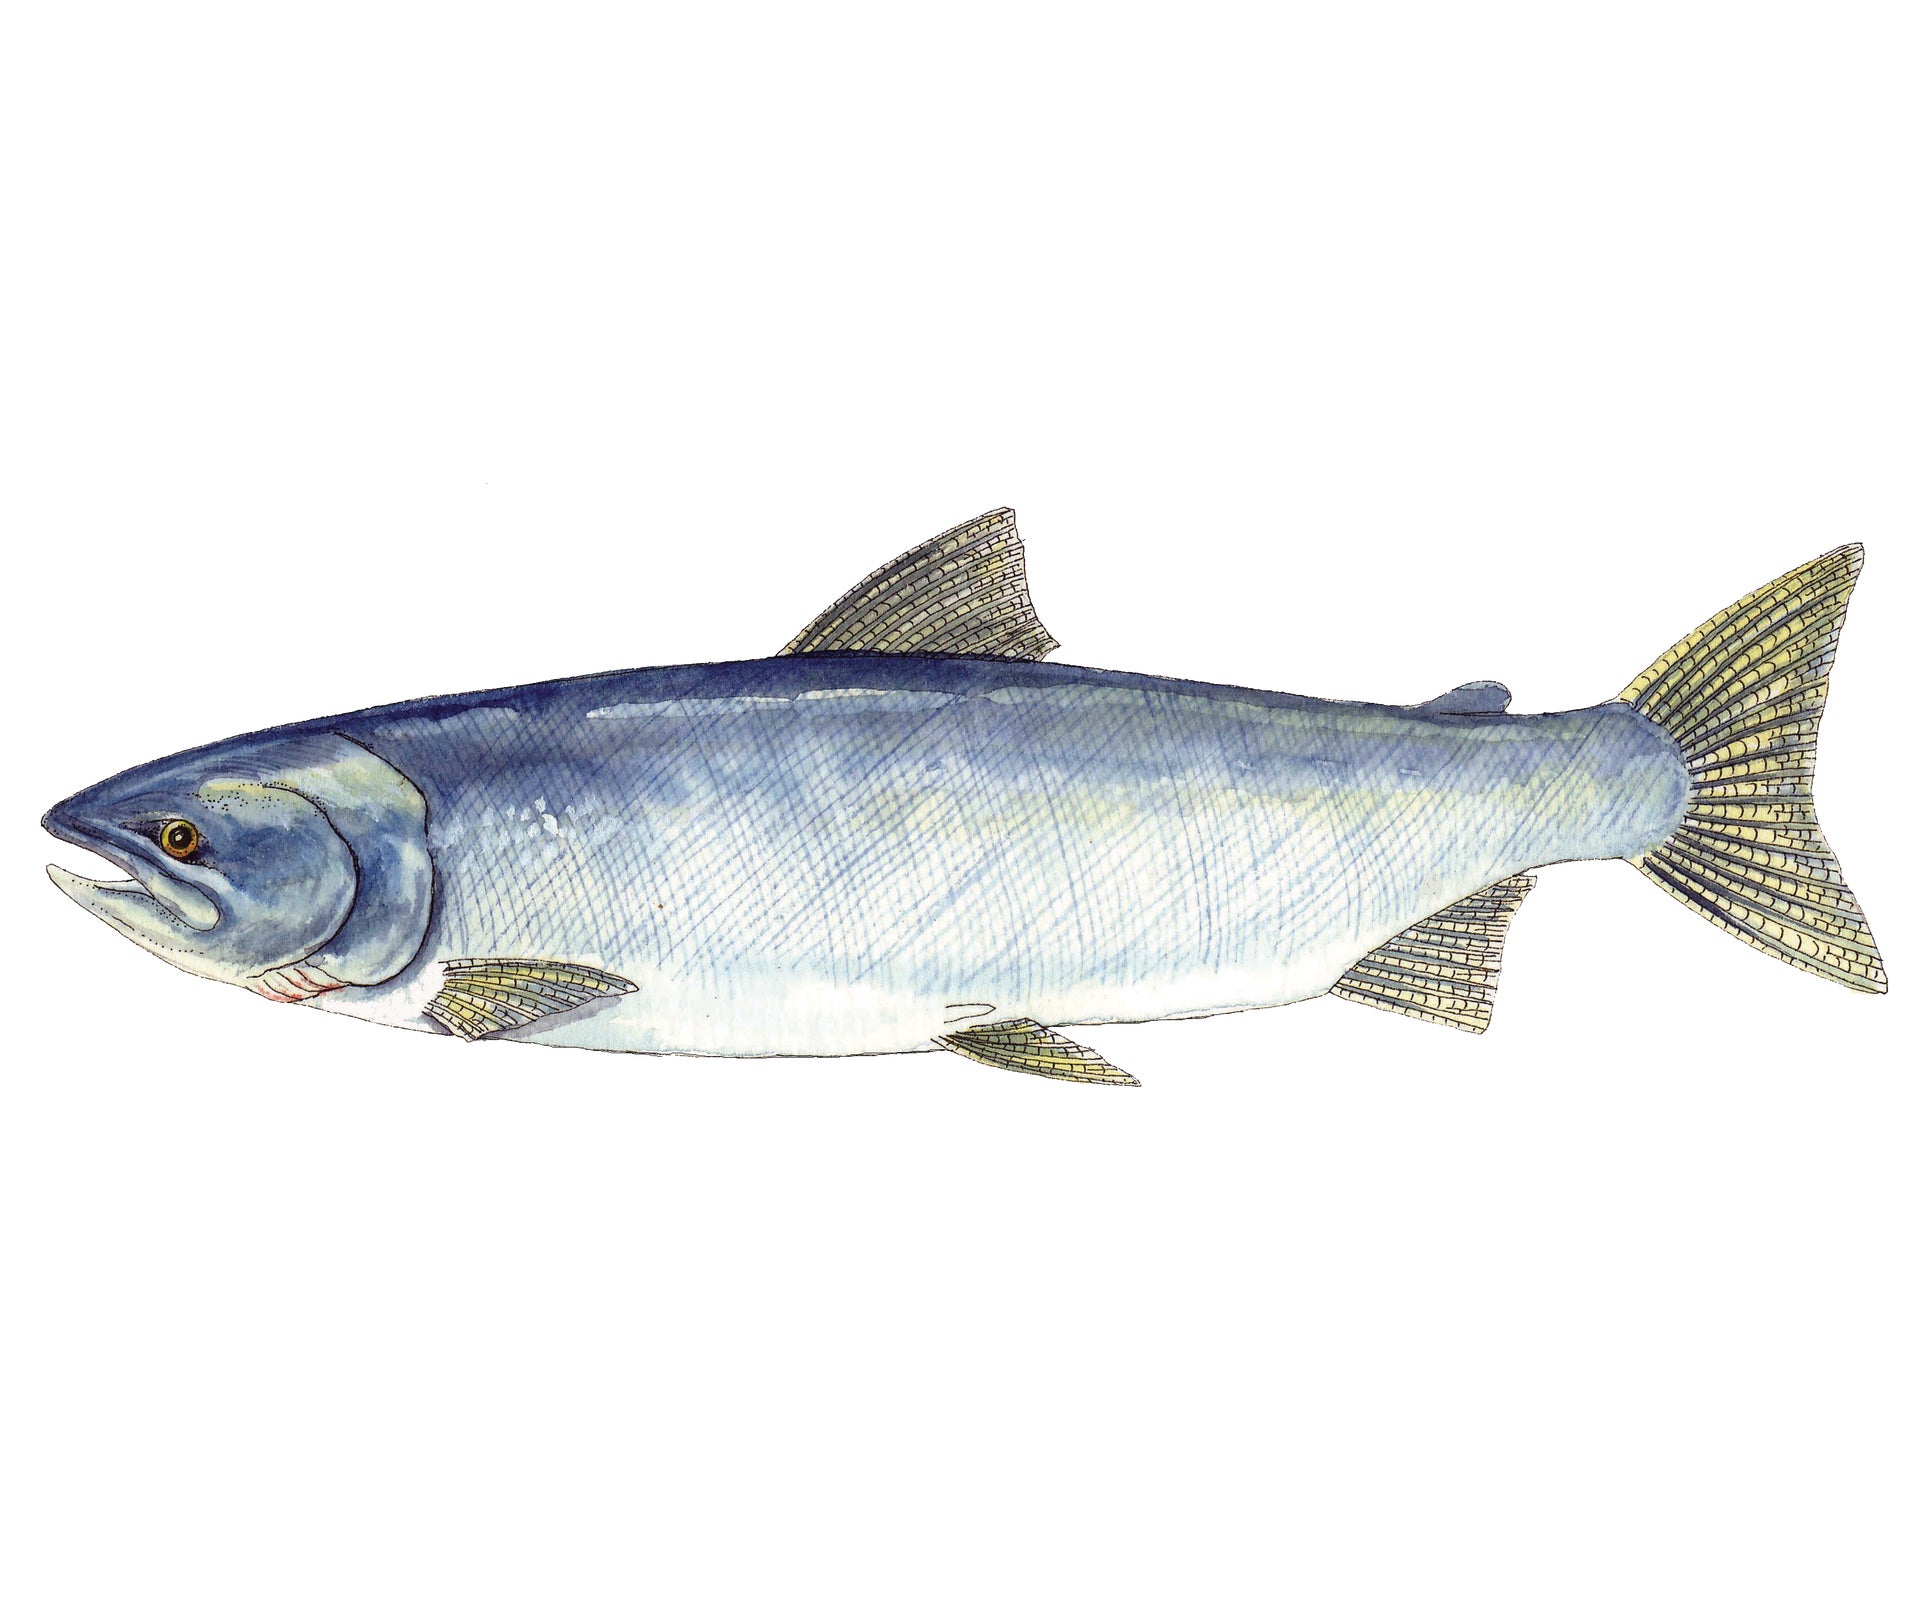 Alaska Keta Salmon Illustration